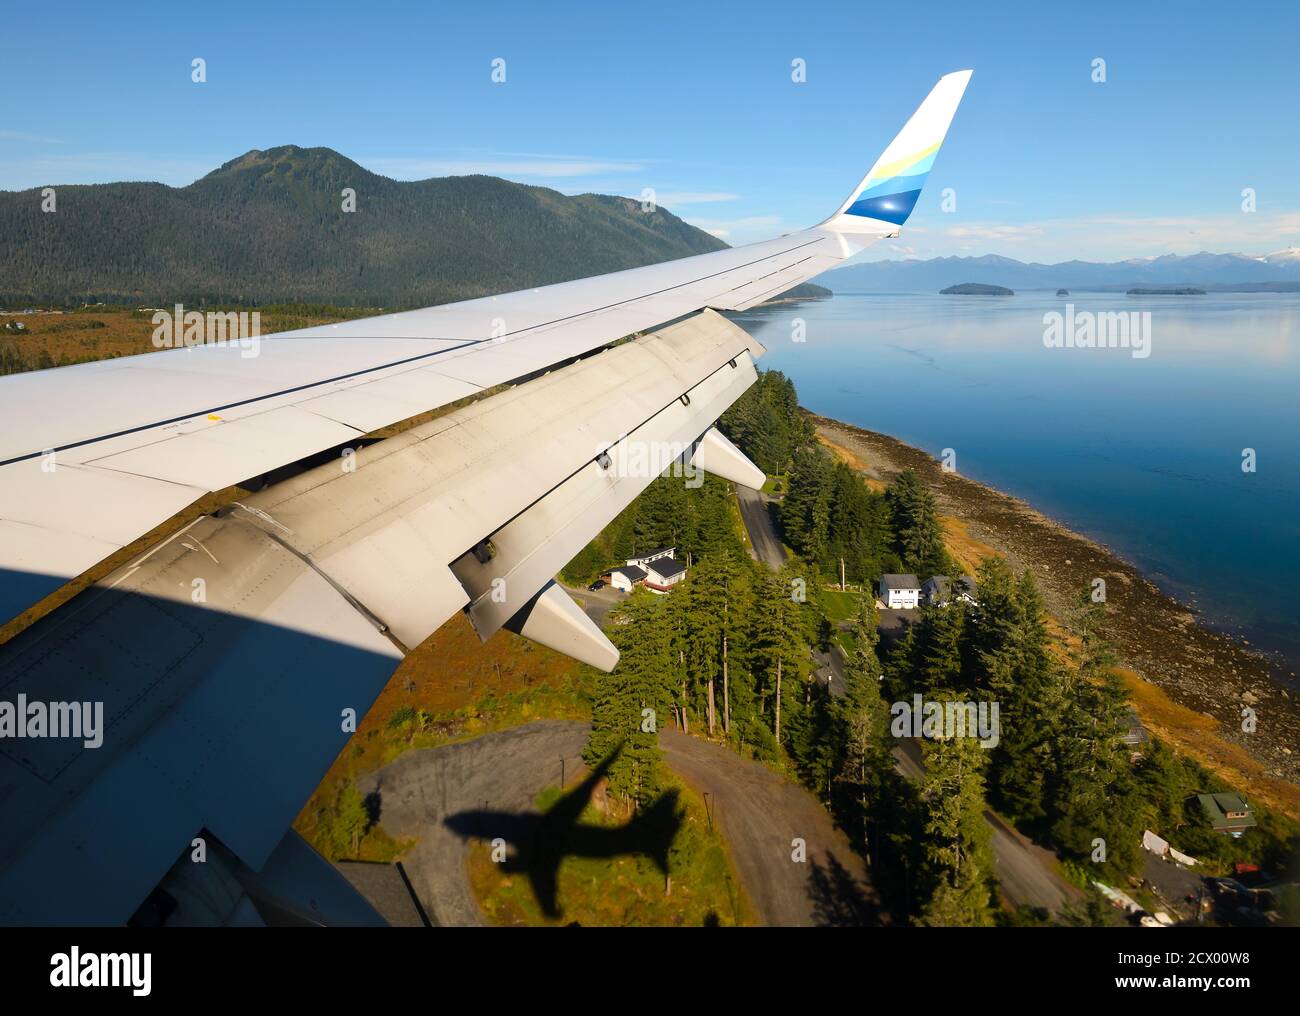 Landung auf dem Petersburg James A. Johnson Airport an Bord der Alaska Airlines Boeing 737. Flug Teil des Essential Air Service für entlegene Standorte. Stockfoto